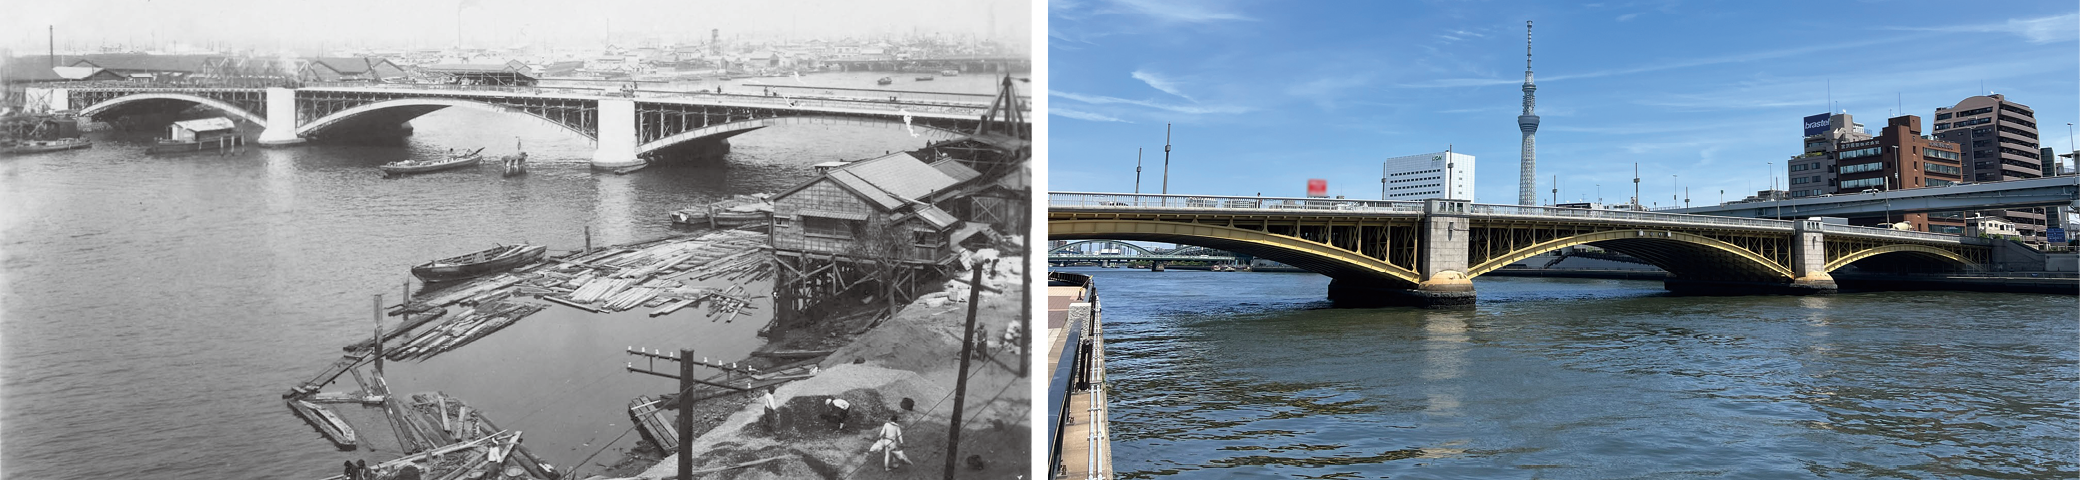 復興橋梁として建設された蔵前橋。竣工前（左・土木学会附属土木図書館提供）と現在（右）の姿。